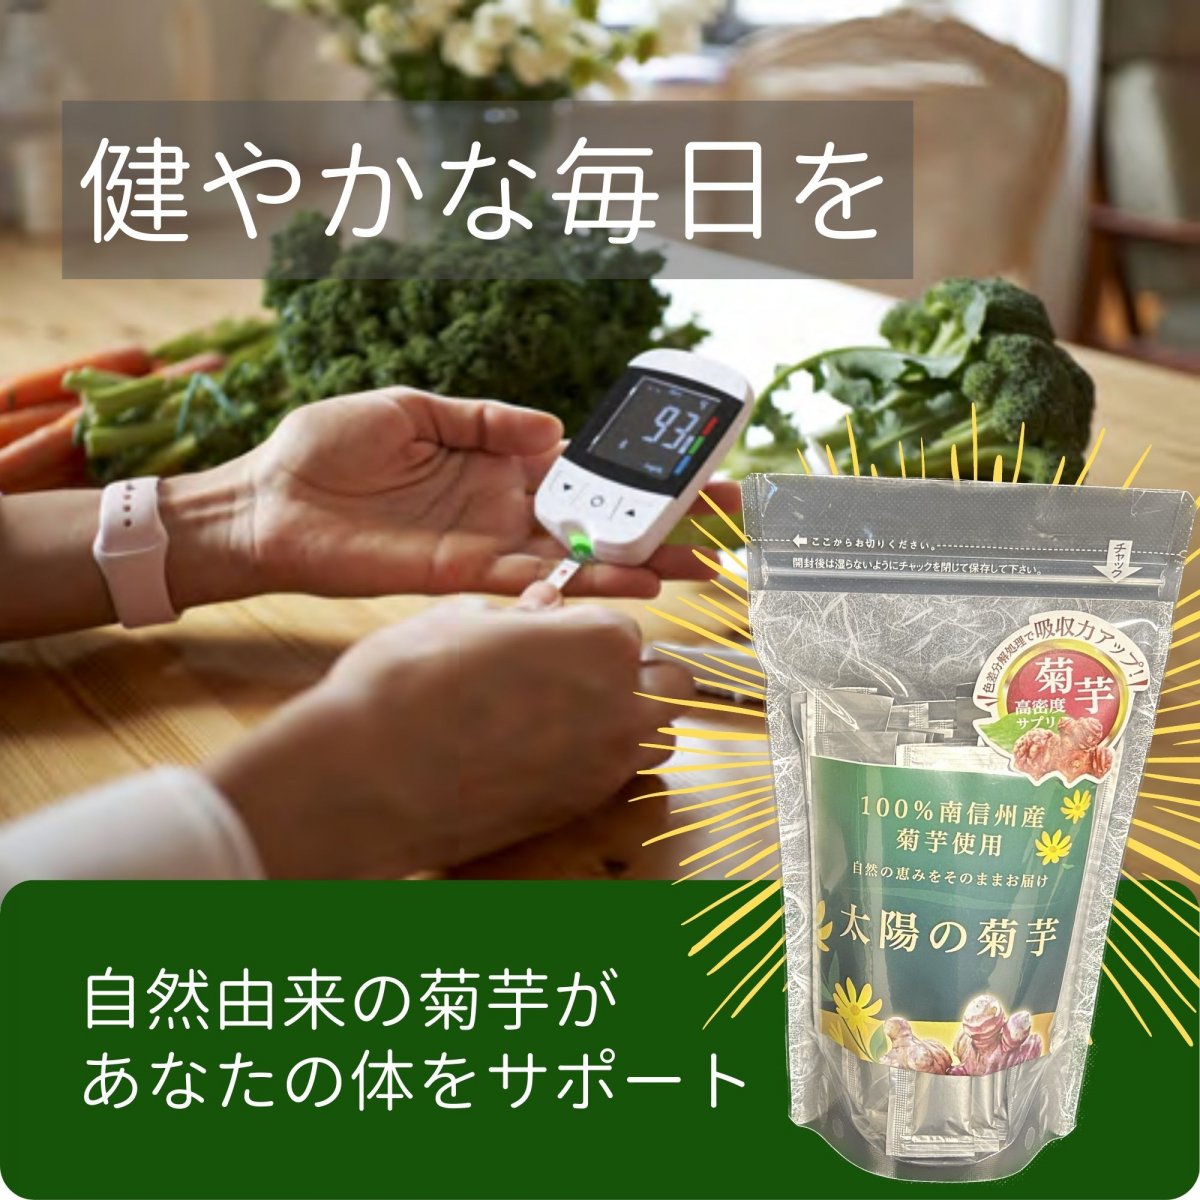 【長野県産菊芋】イヌリン由来成分高含有した太陽の菊芋